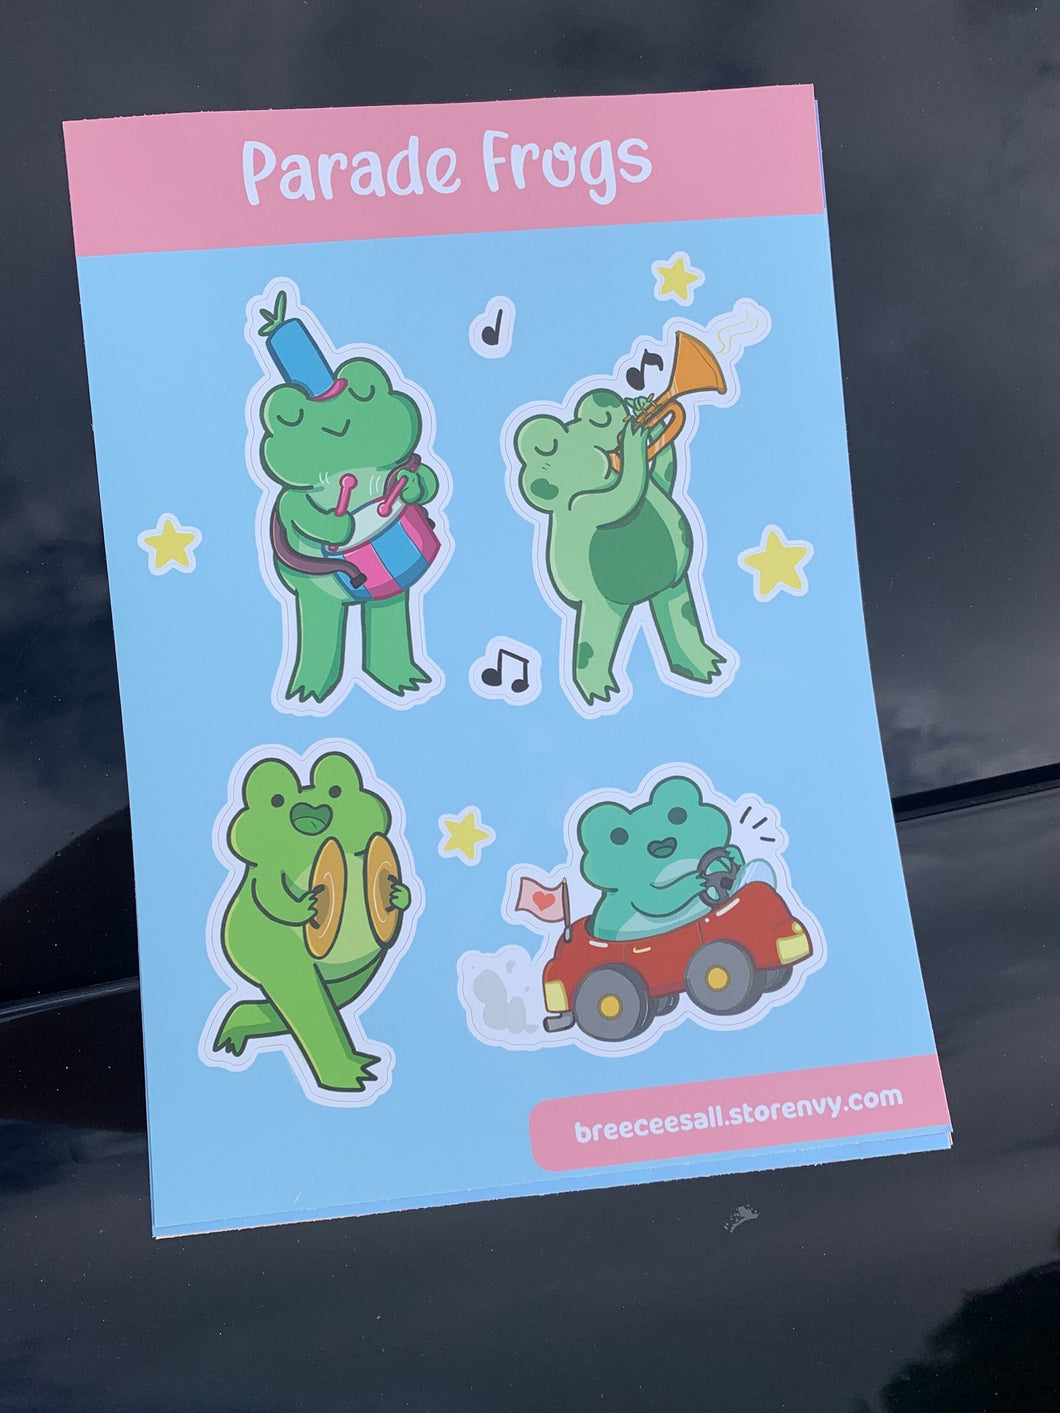 Froggie Sticker Sheet